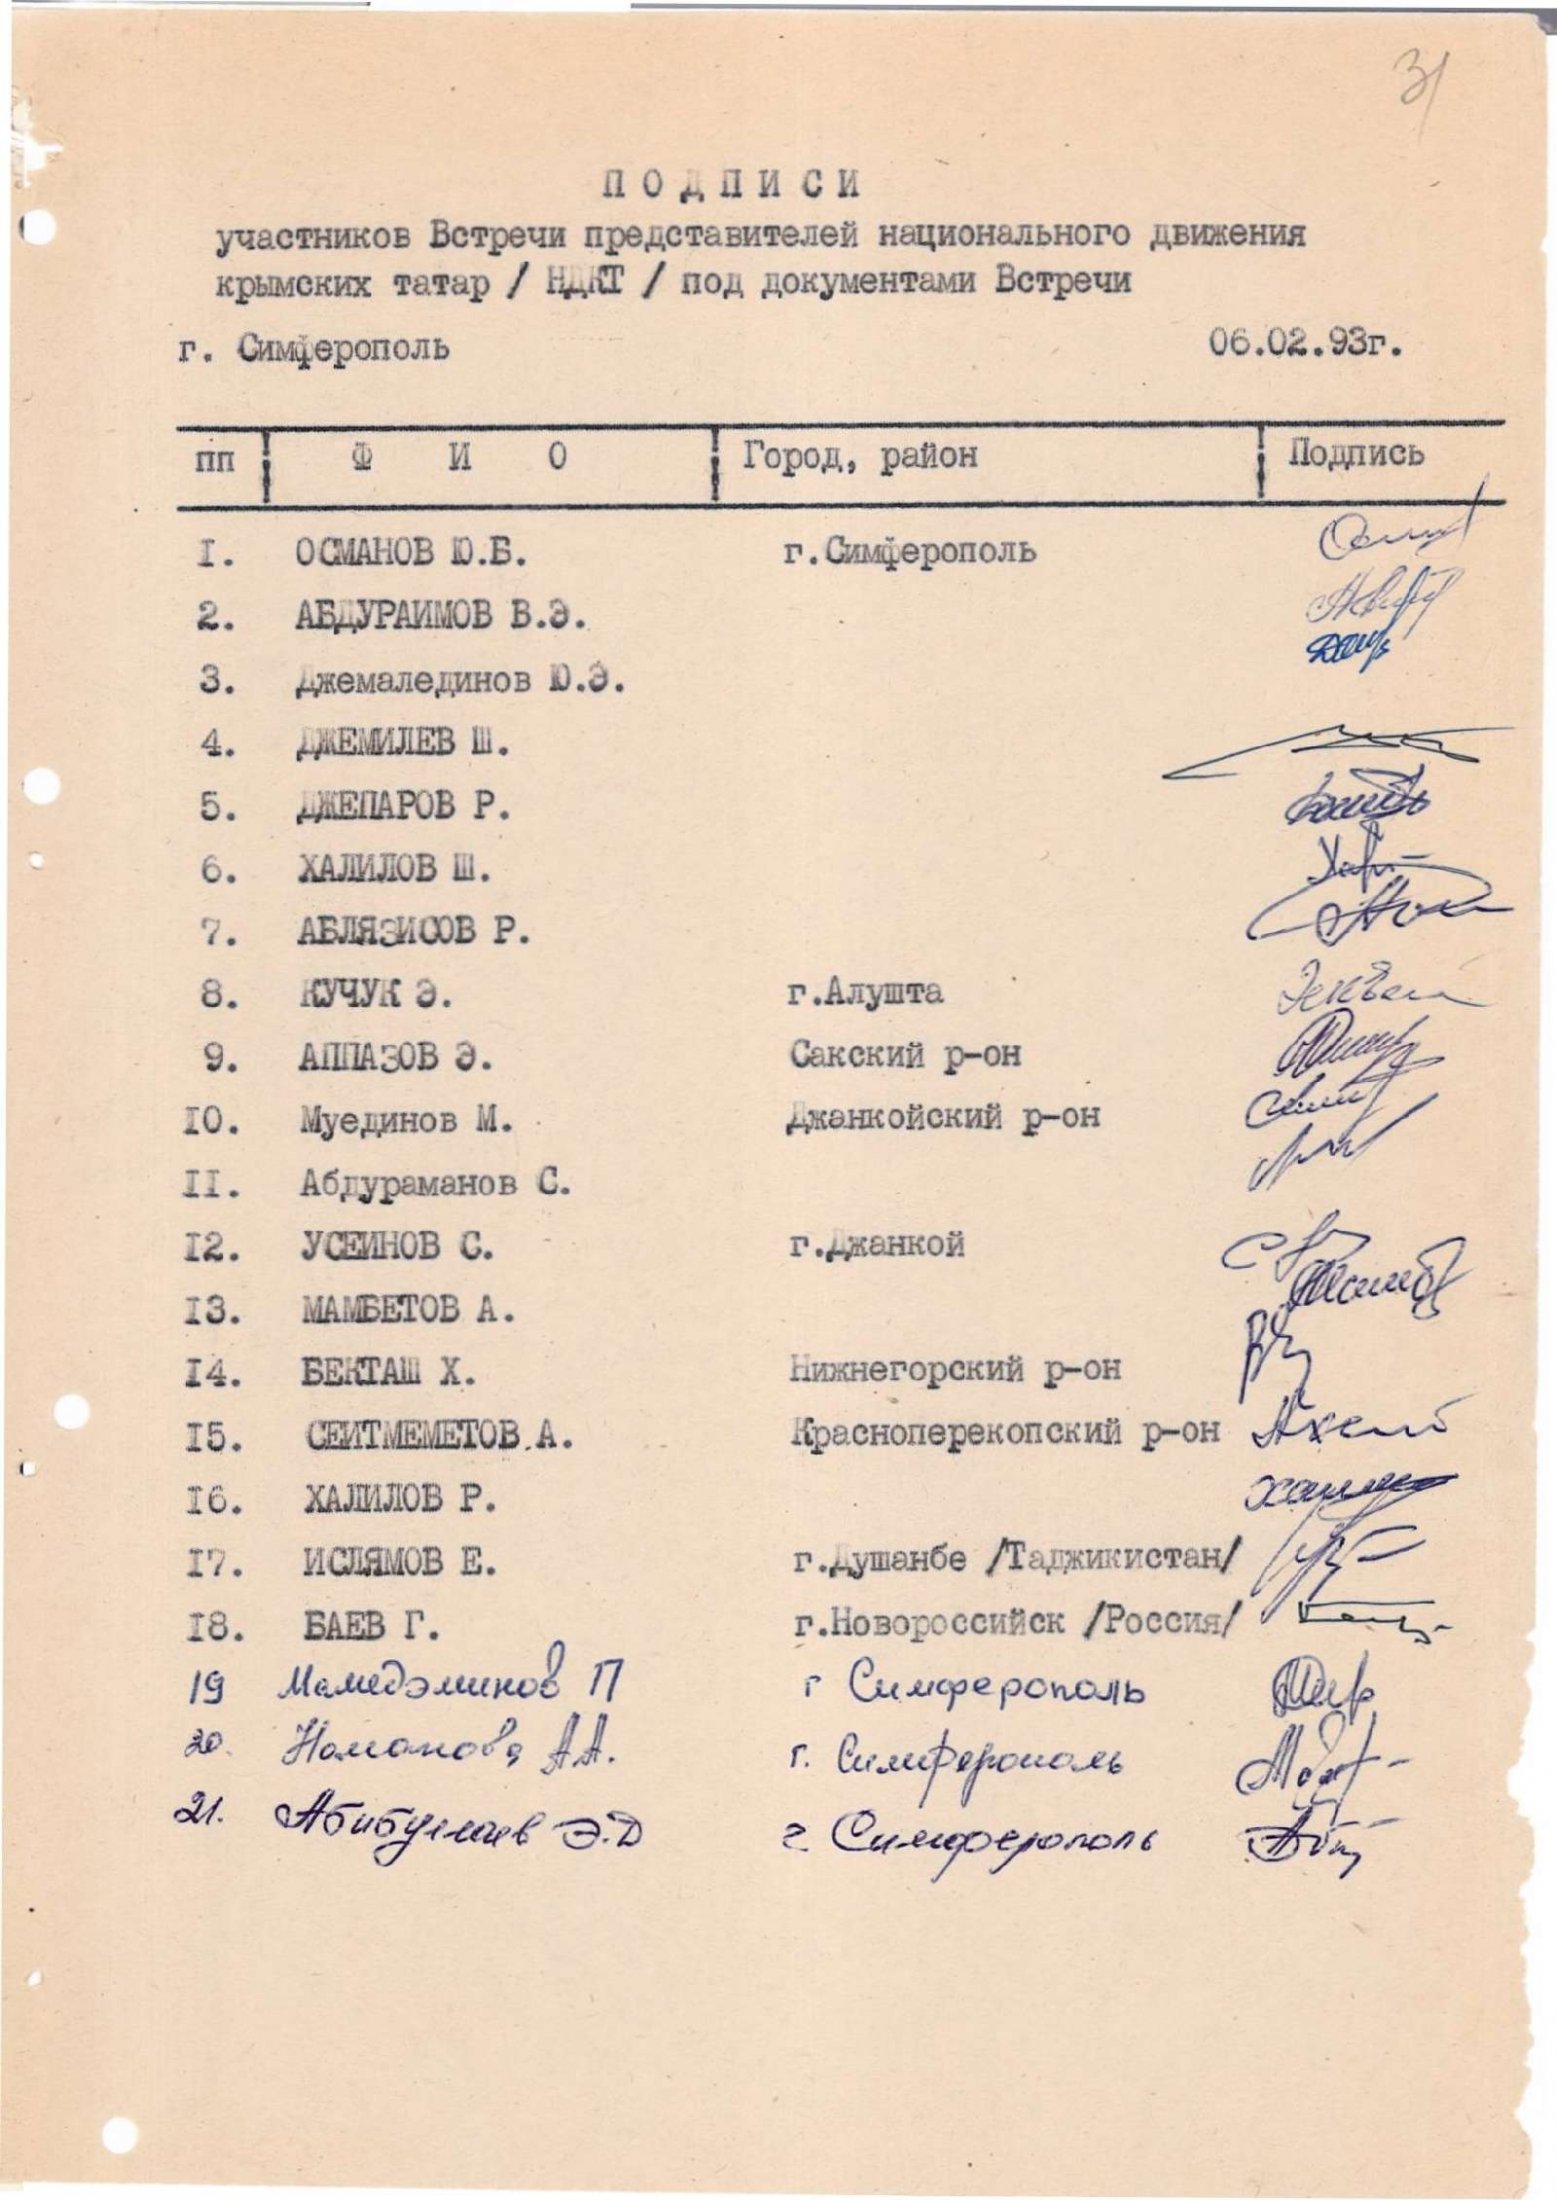 Підписи учасників зустрічі представників Національного руху кримських татар щодо необхідності розробки державної програми організації повернення кримських татар на Батьківщину. 6 лютого 1993 р.